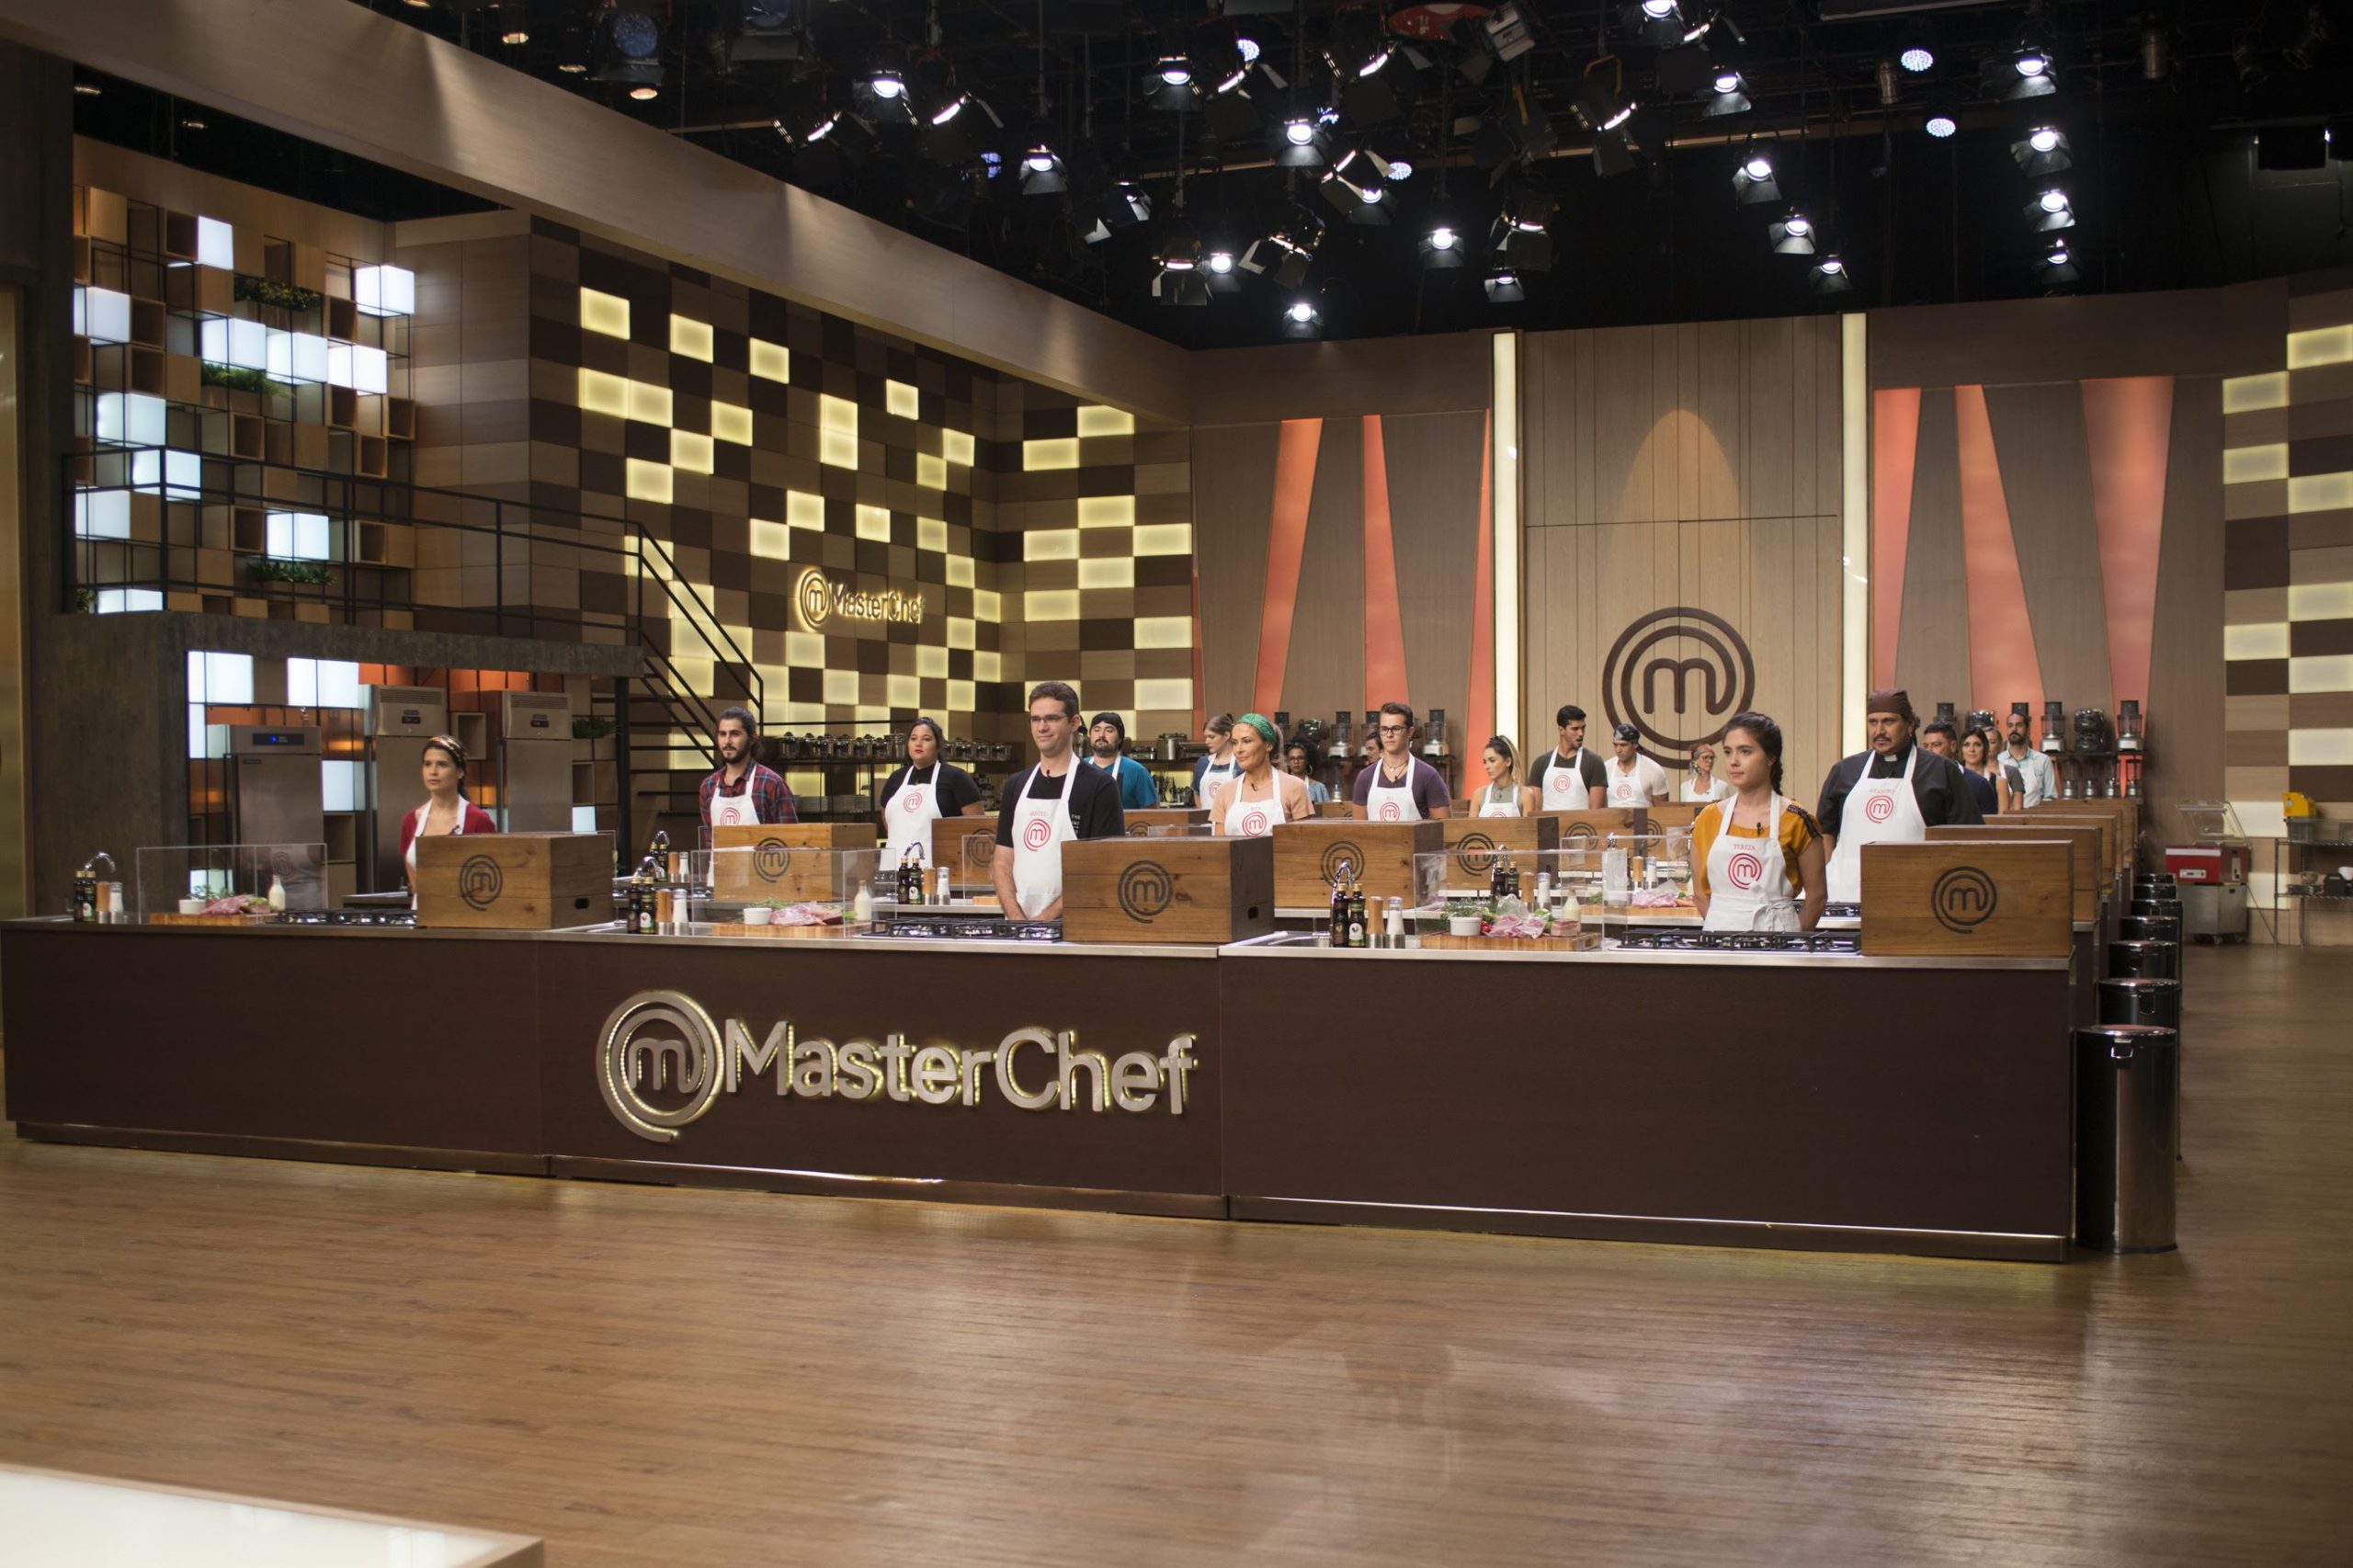 “MasterChef”: Caixa Misteriosa é o próximo desafio do reality culinário